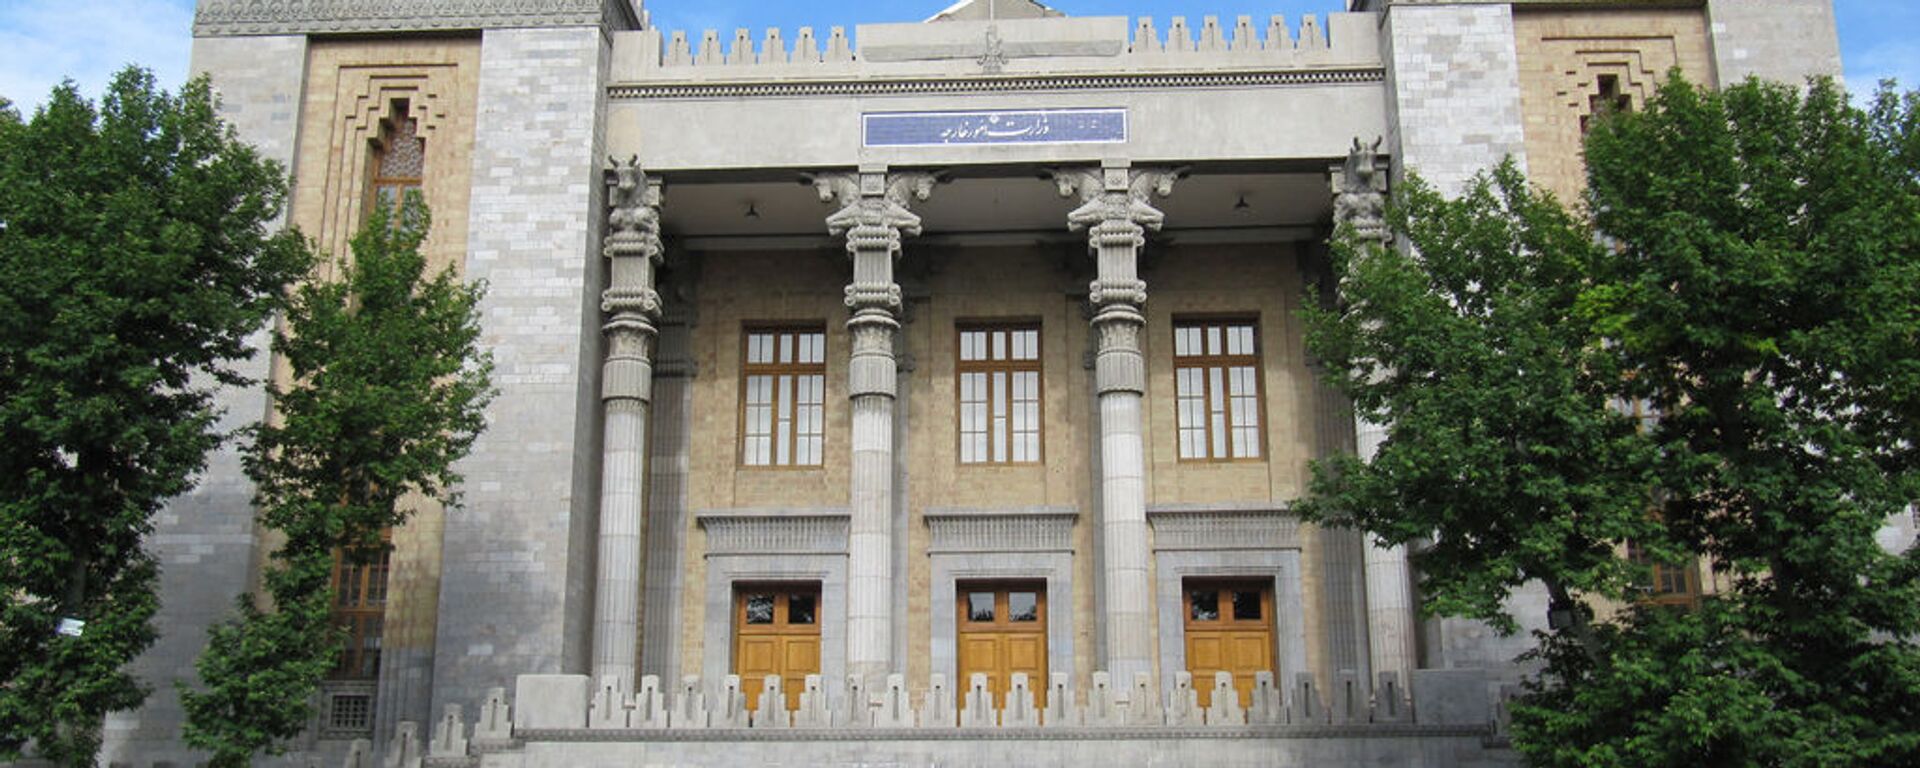 Здание МИД Исламской Республики Иран - Sputnik Армения, 1920, 03.05.2021